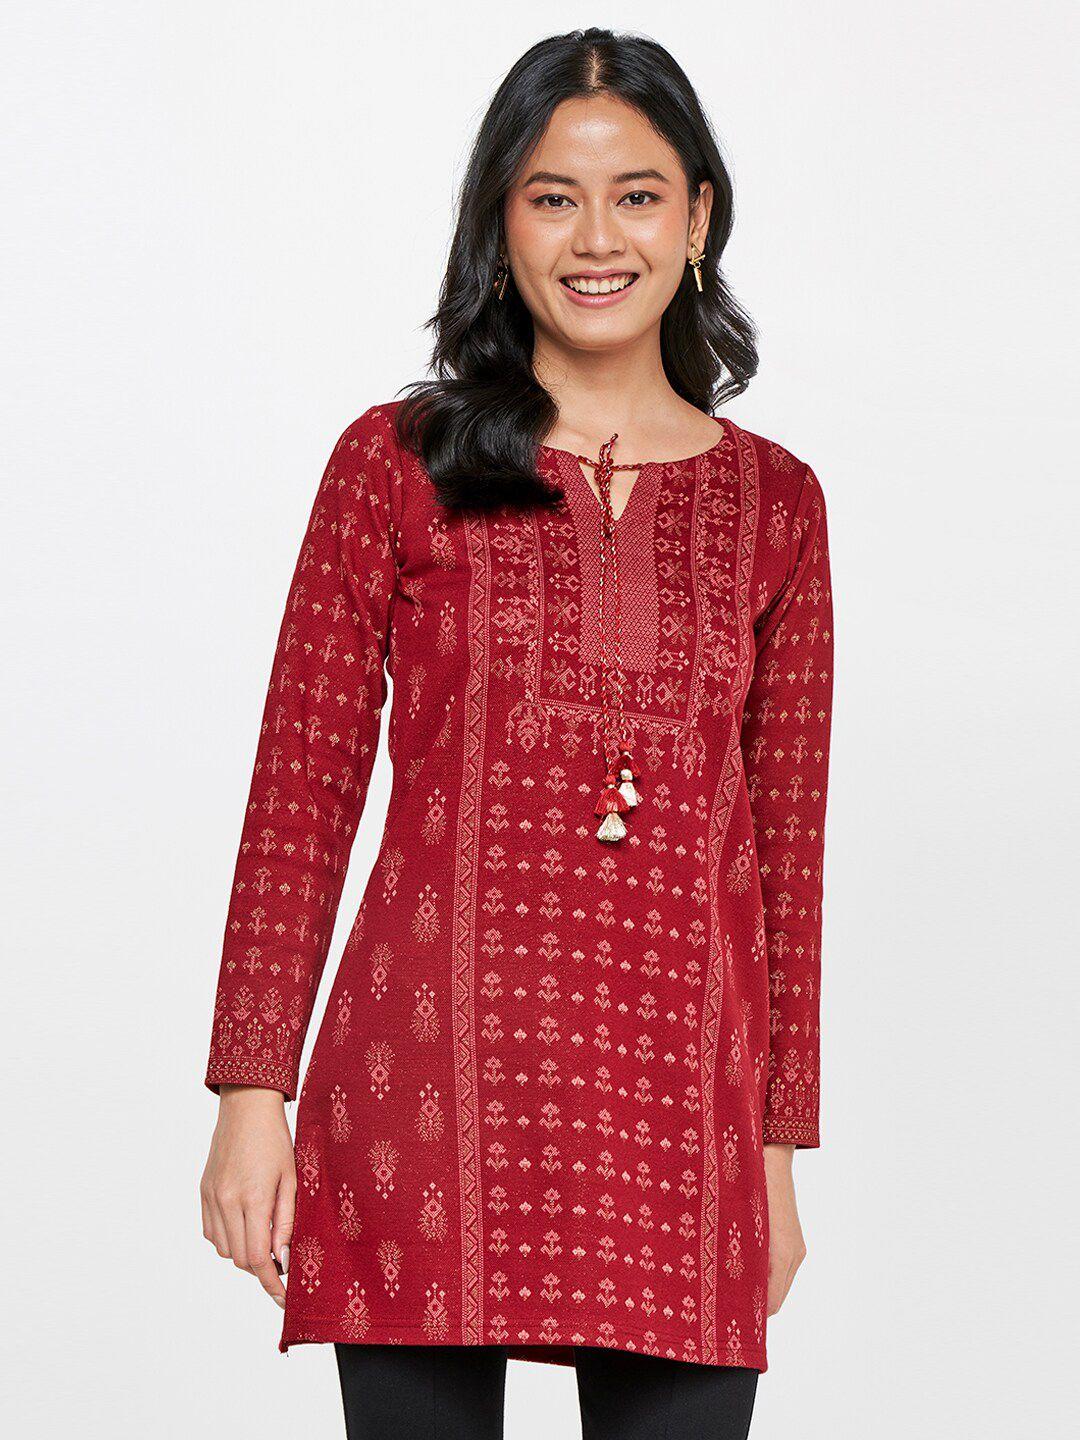 global-desi-women-maroon-ethnic-printed-long-sleeves-tunic